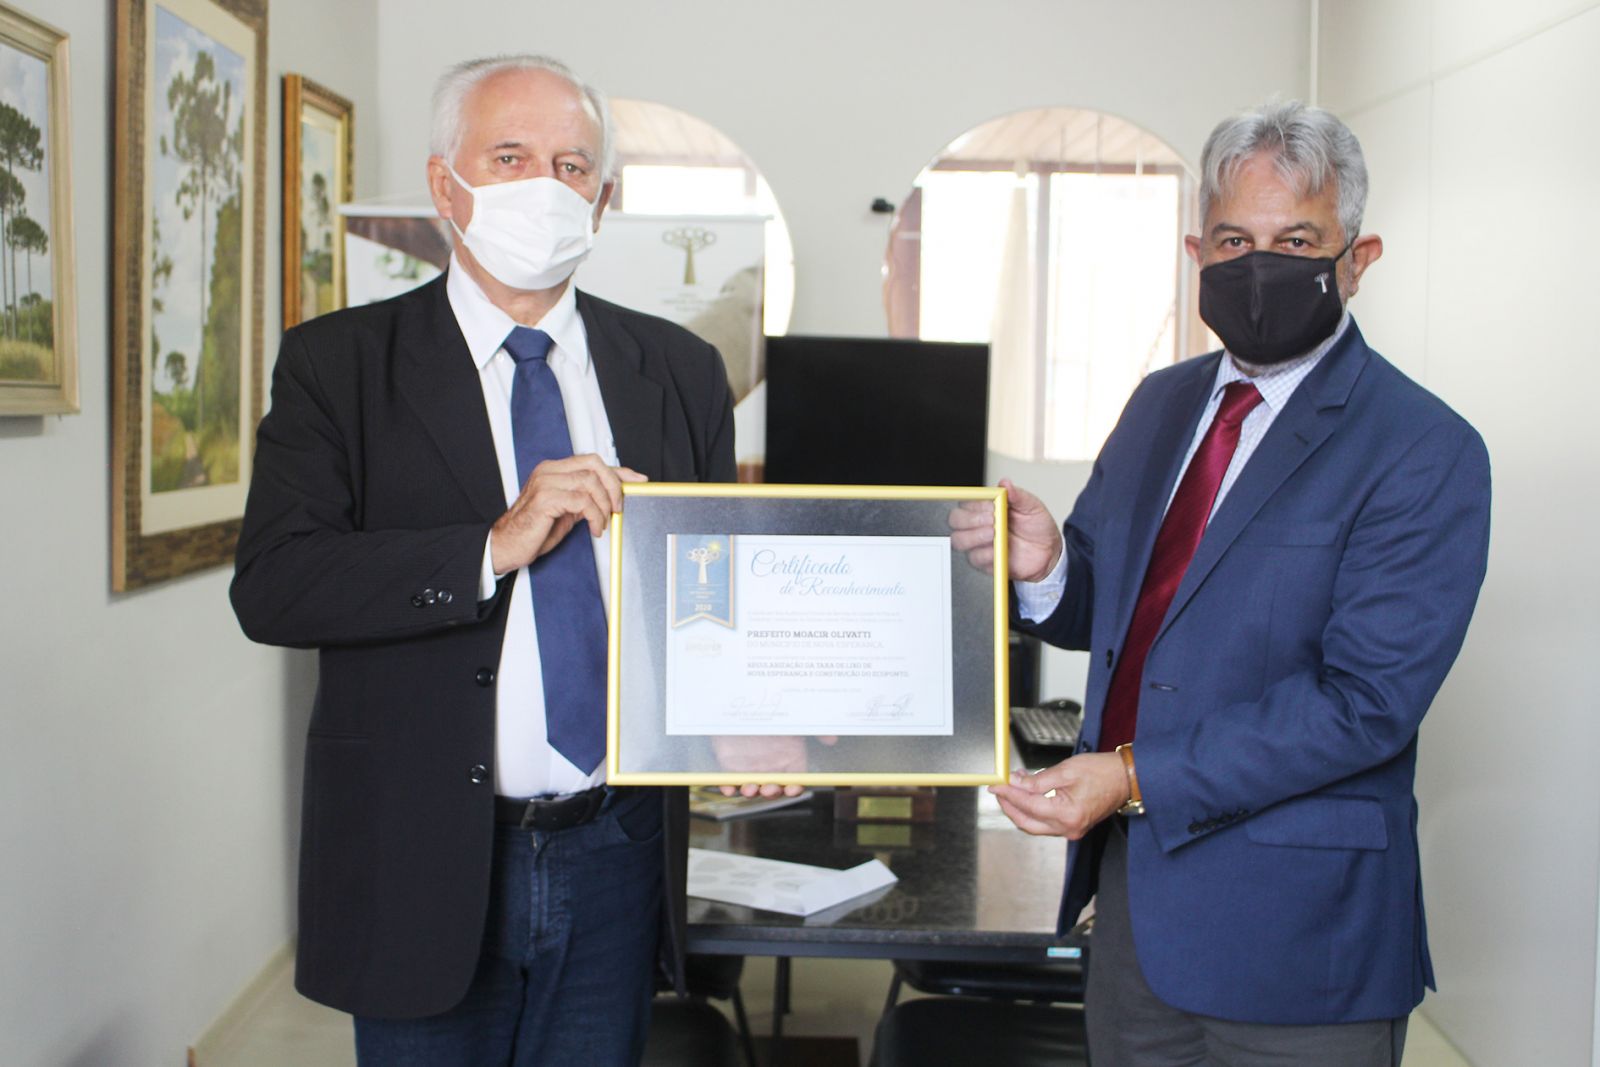 Prefeito de Nova Esperança, Moacir Olivatti, foi contemplado com o Certificado de Reconhecimento pelo projeto de Regularização da Taxa de Lixo